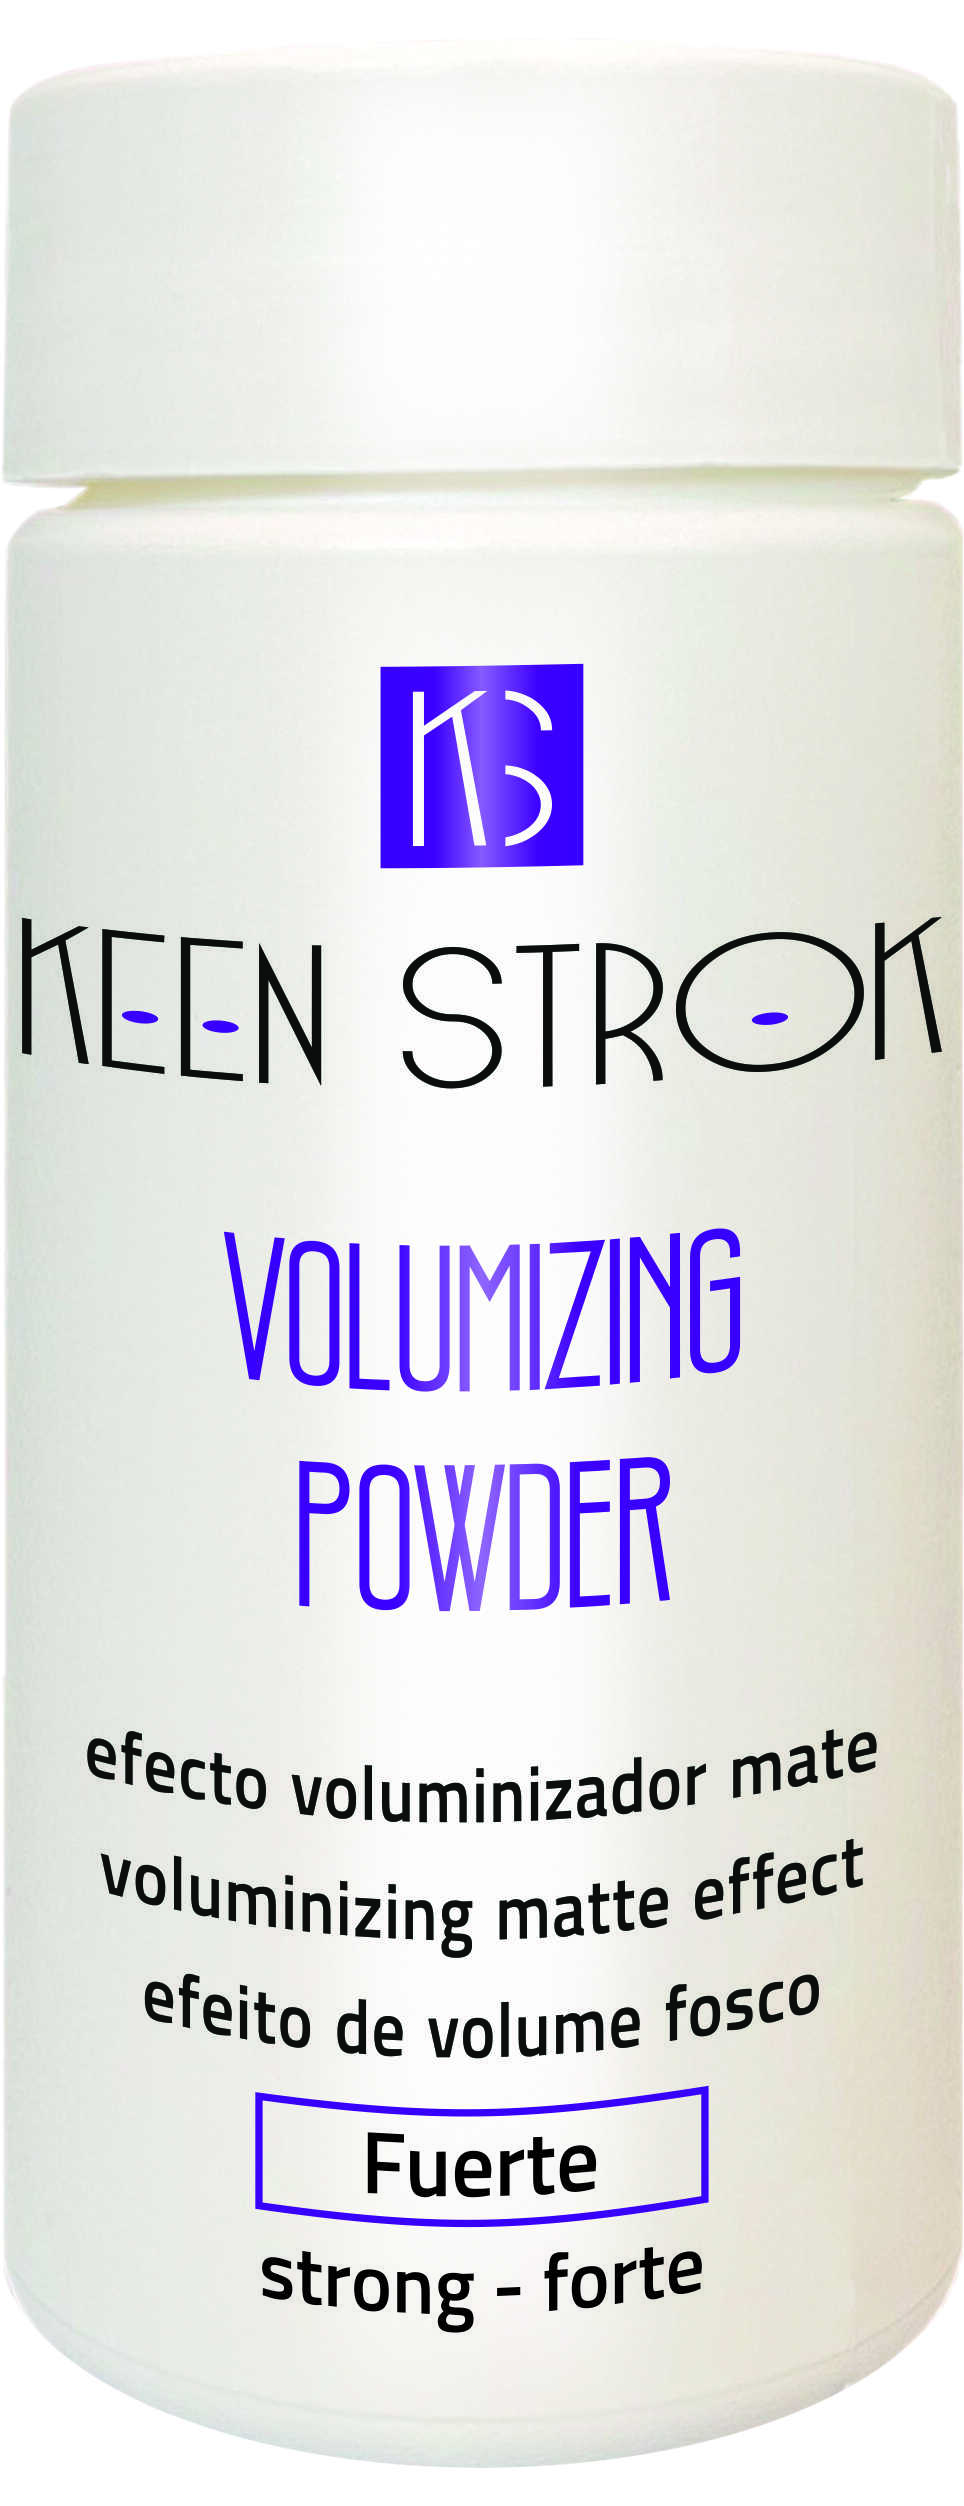 Keen Strok Volumizing Powder - objemový púder, 12 g